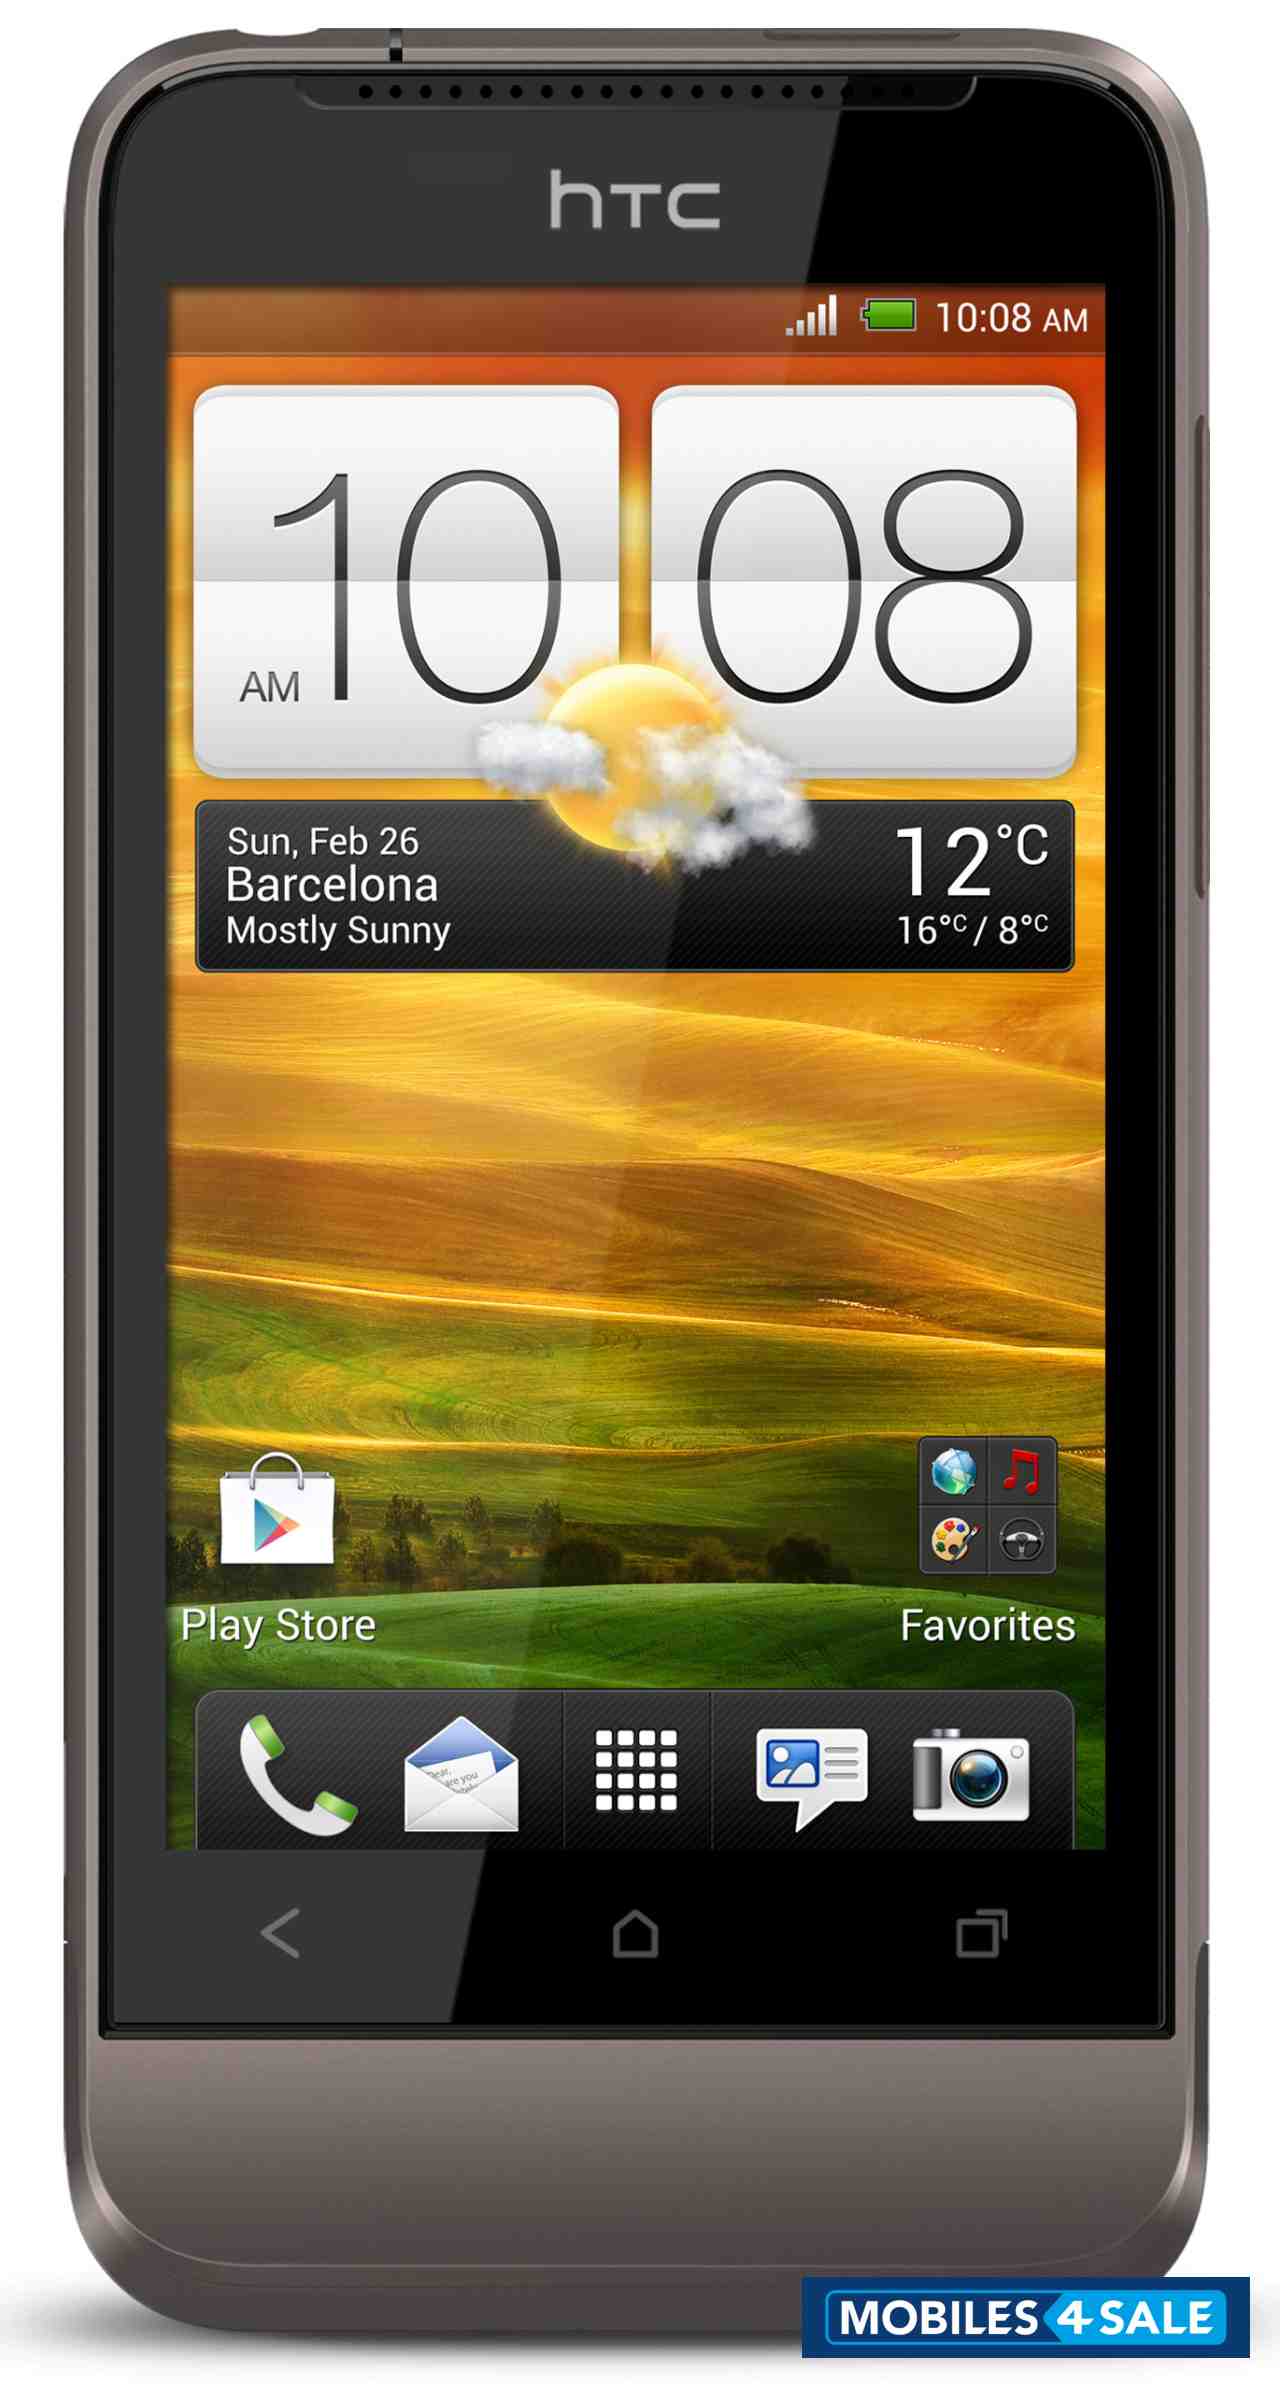 Grey HTC One V